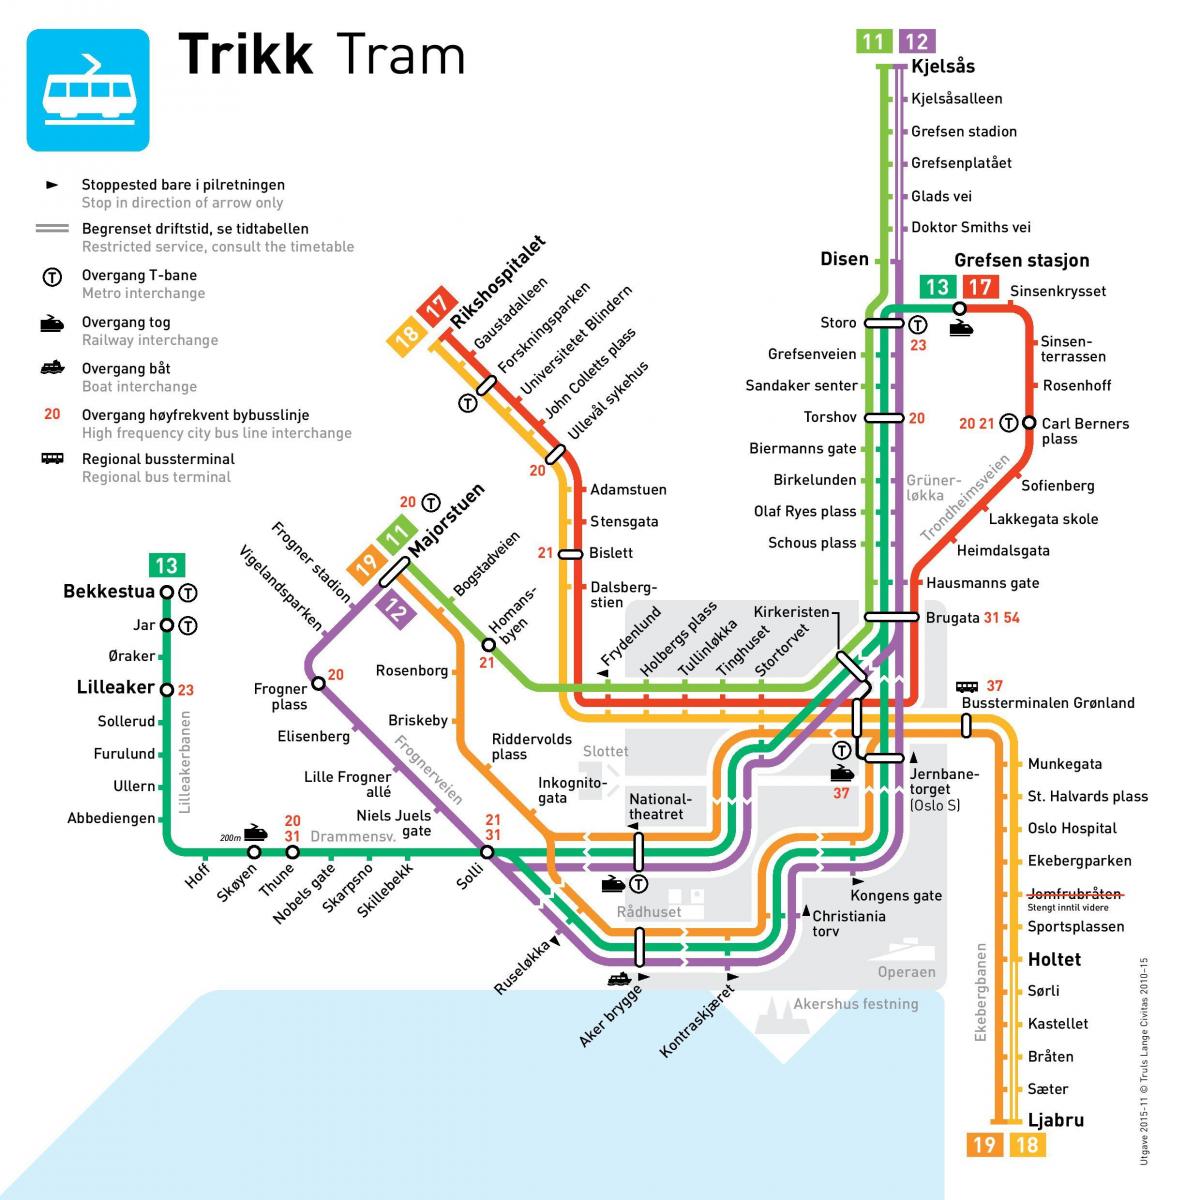 Osloのトラムステーションマップ